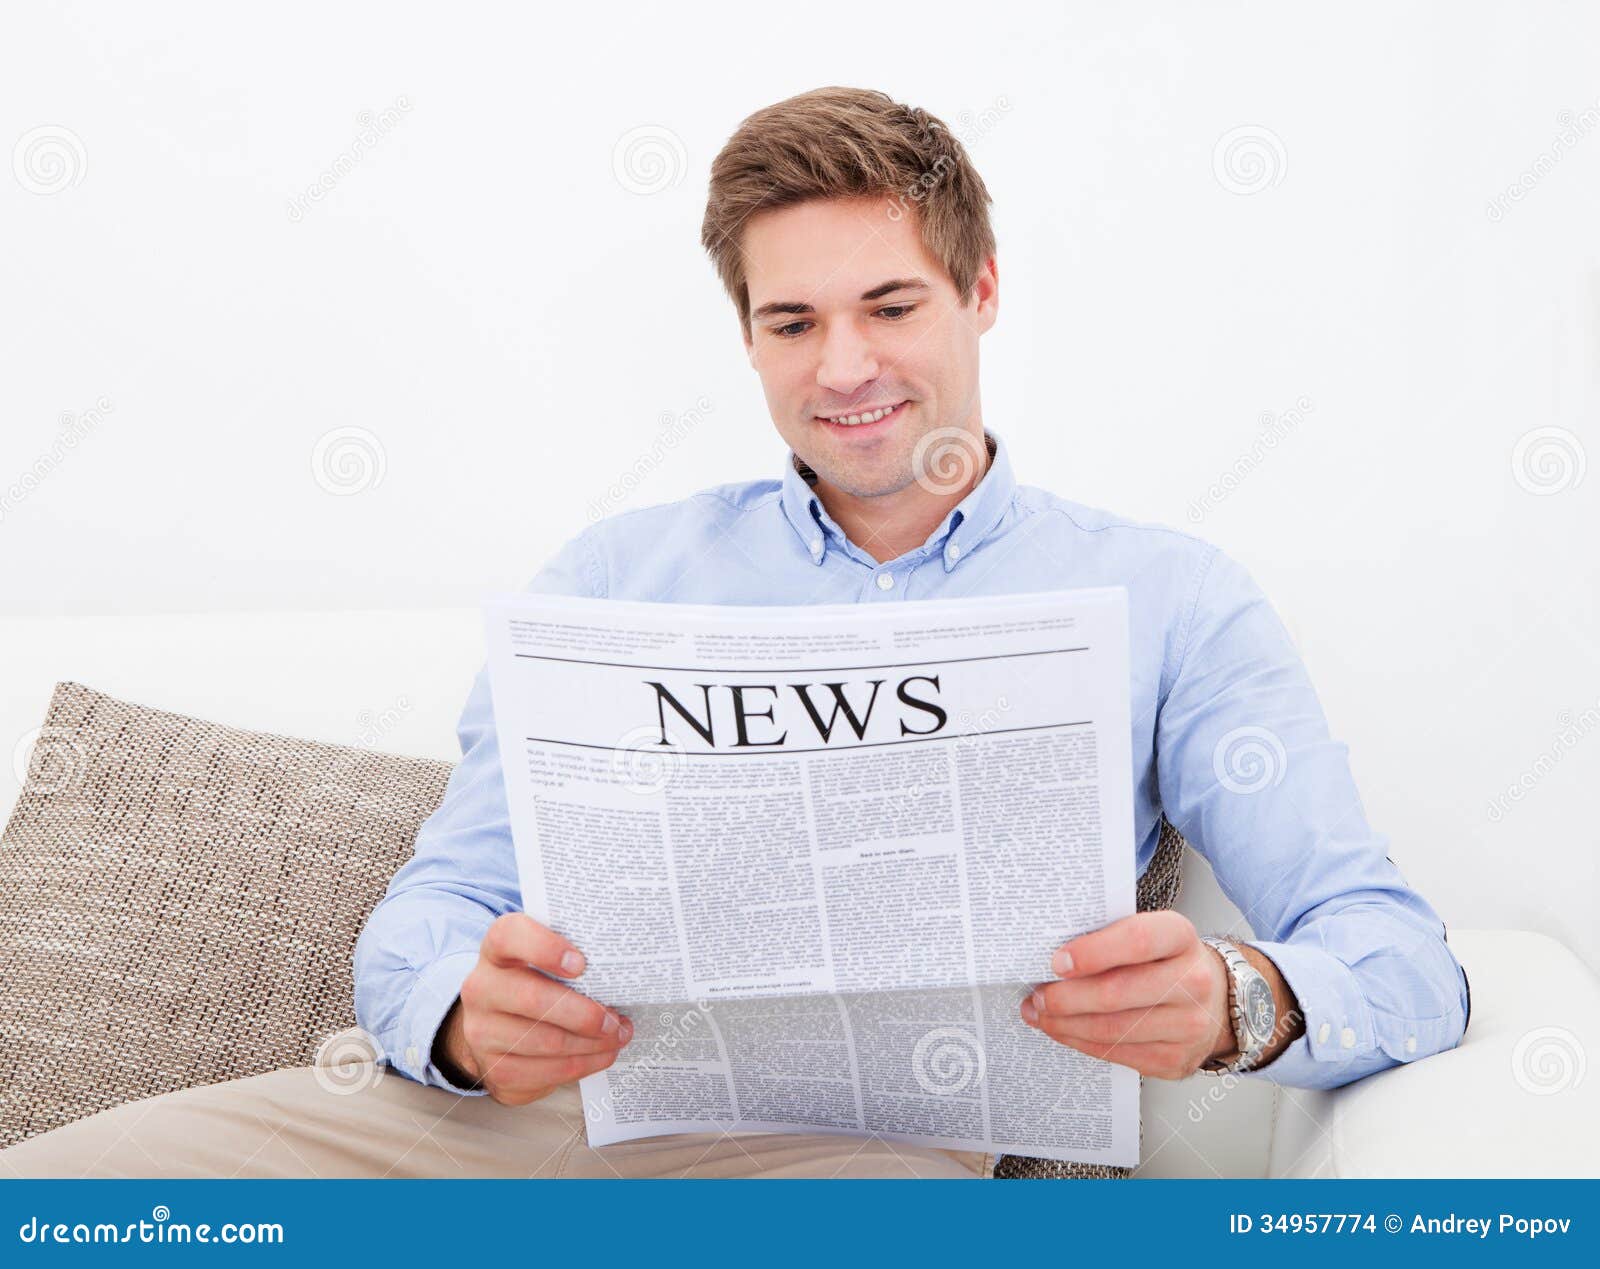 Newspaper man. Мужчина с газетой. Парень с газетой в руках. Мужчина держит газету. Мужчина читает газету.